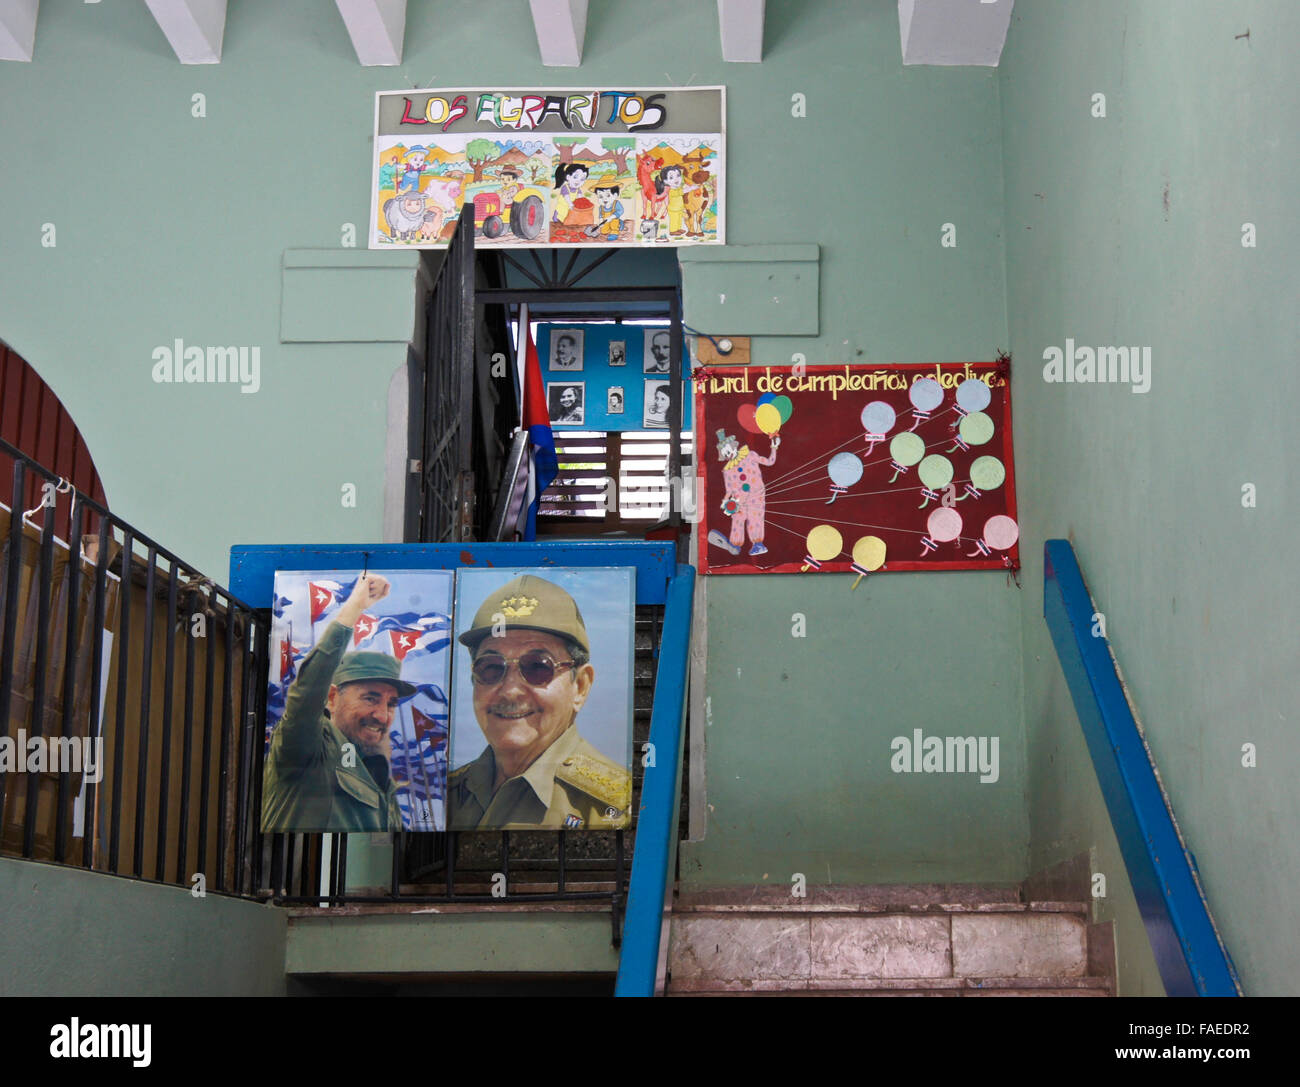 Des affiches à l'extérieur de l'école maternelle à La Havane, Cuba Banque D'Images